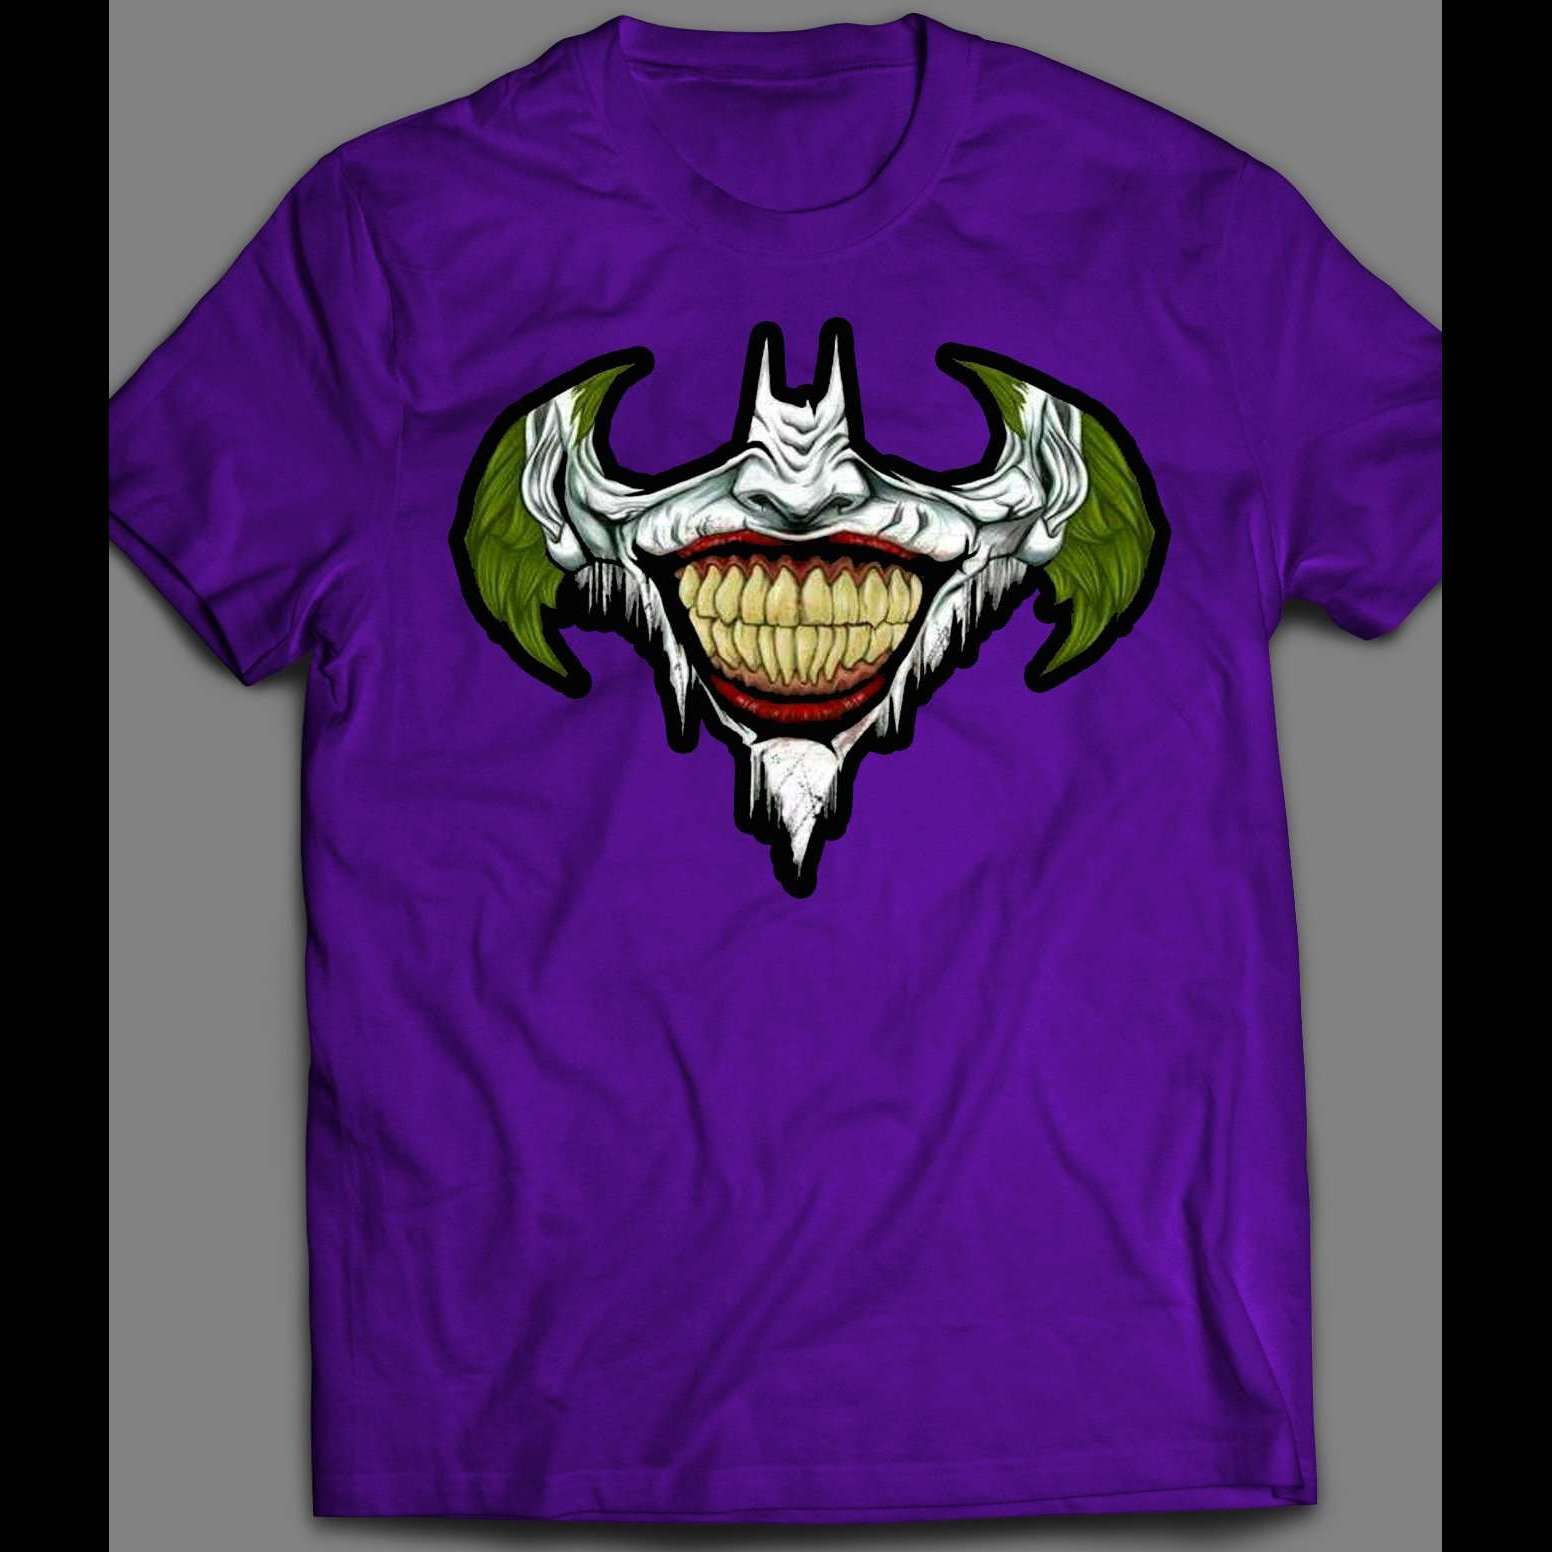 THE JOKER X BATMAN LOGO MASH UP CUSTOM ART SHIRT – OldSkool Shirts